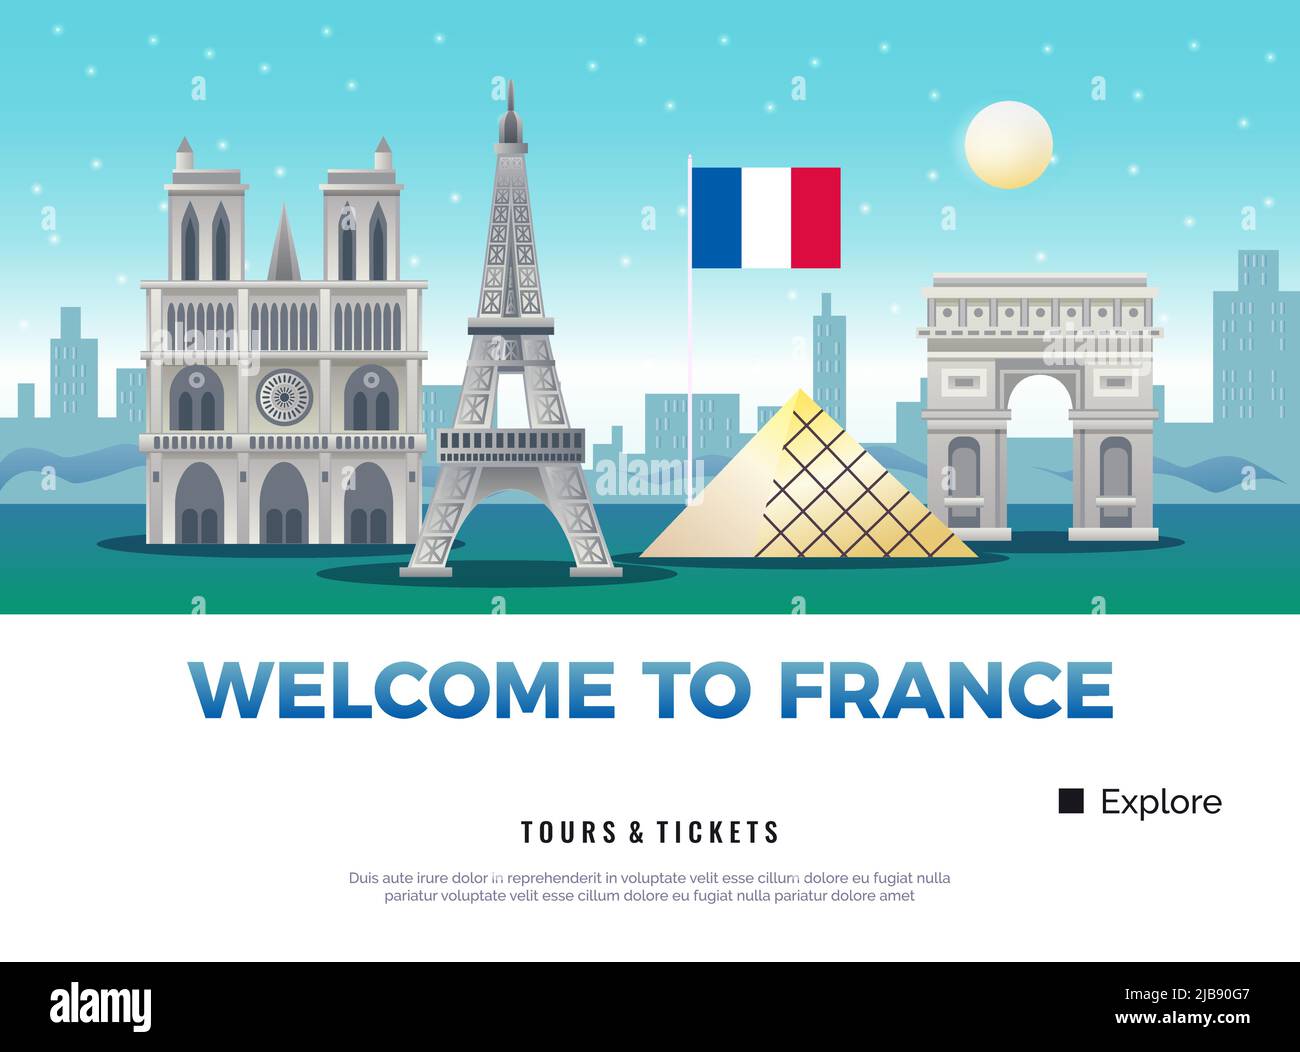 Frankreich Tourismus-Plakat mit Museen und Sehenswürdigkeiten Symbole flache Vektor-Illustration Stock Vektor